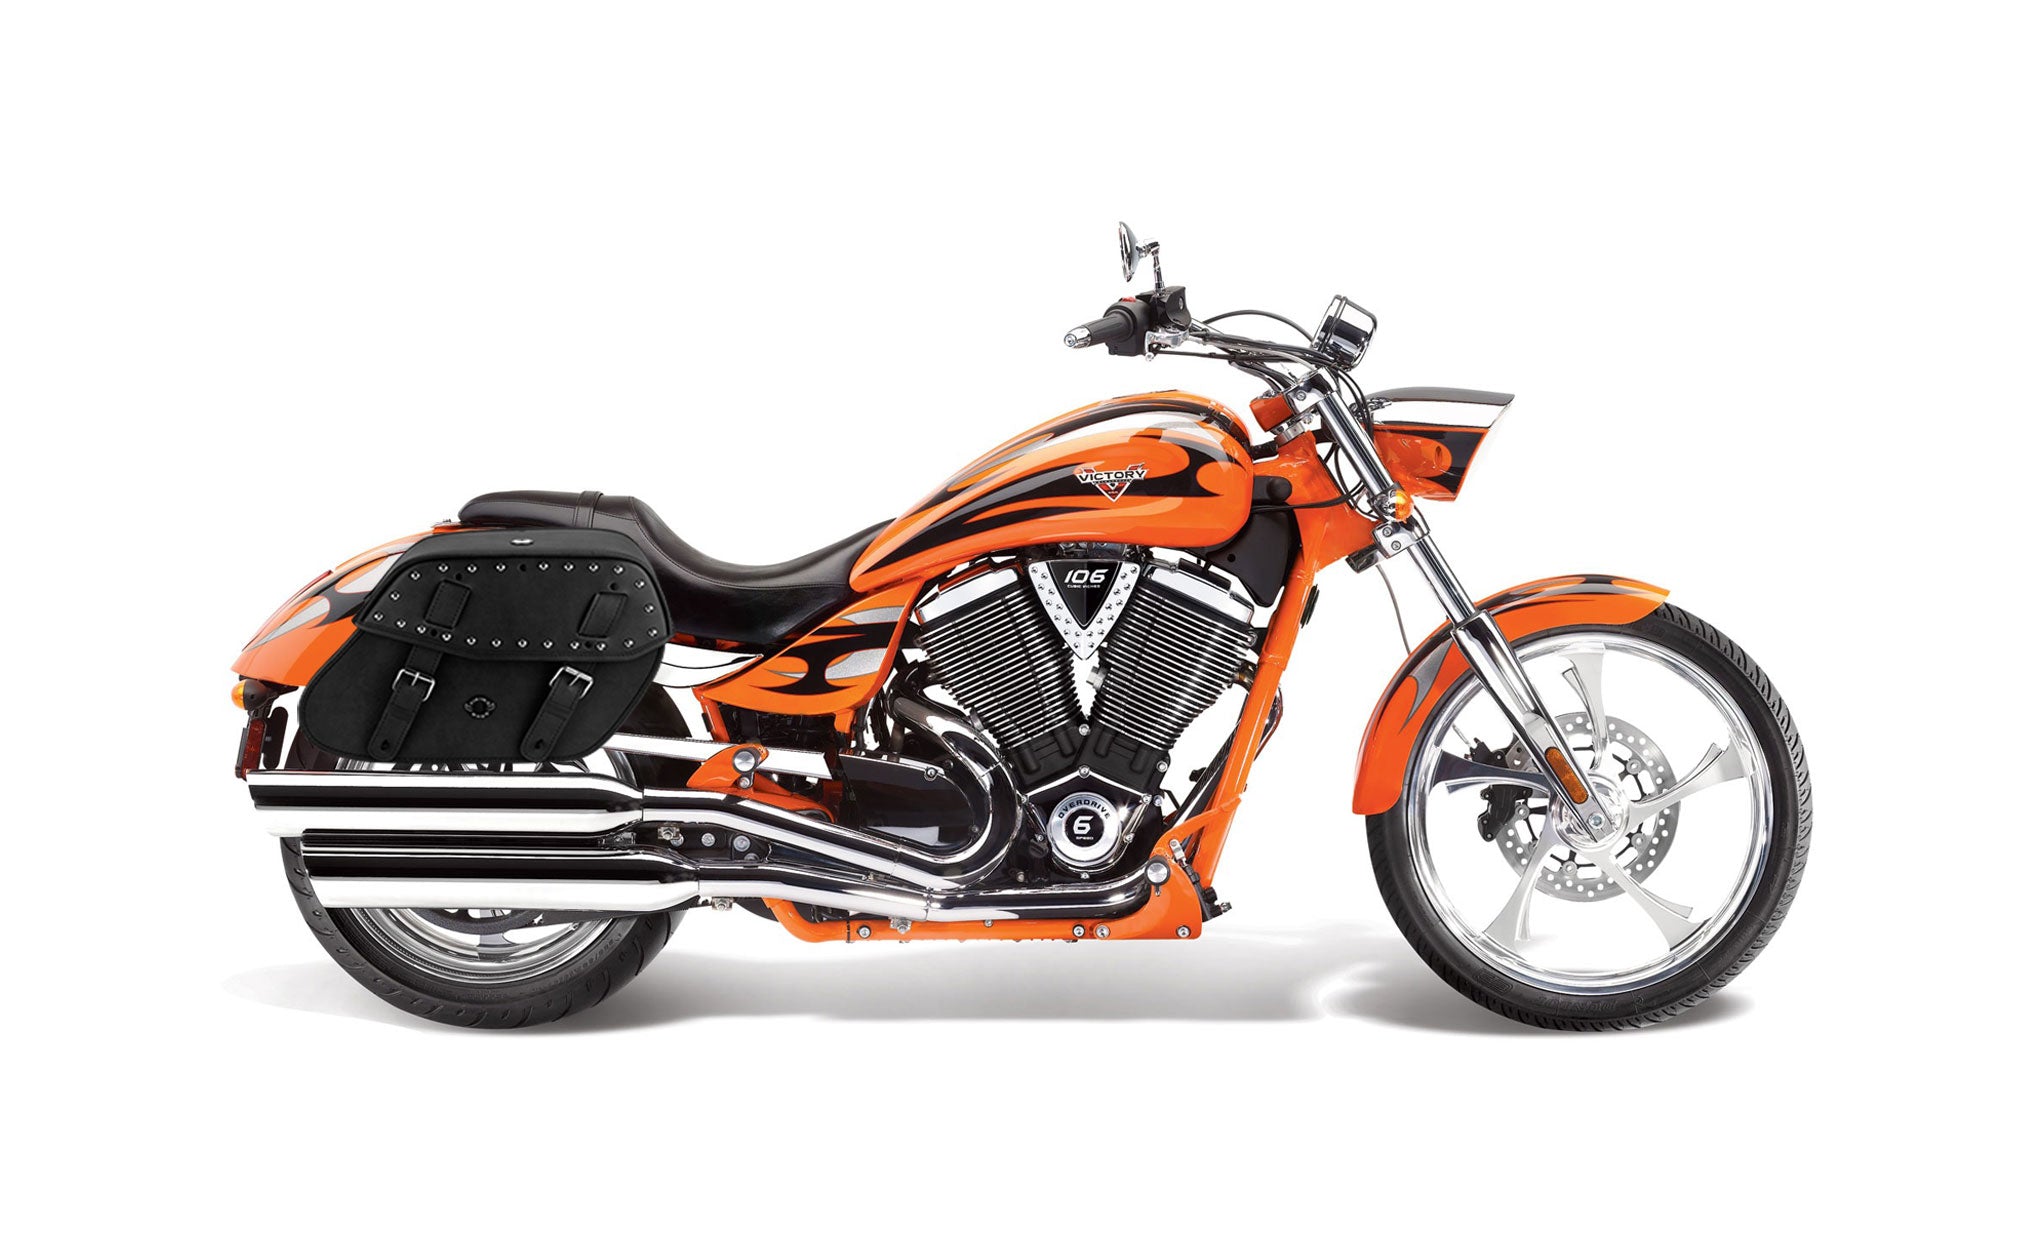 Viking Odin Large Victory Jackpot Studded Leather Motorcycle Saddlebags on Bike Photo @expand